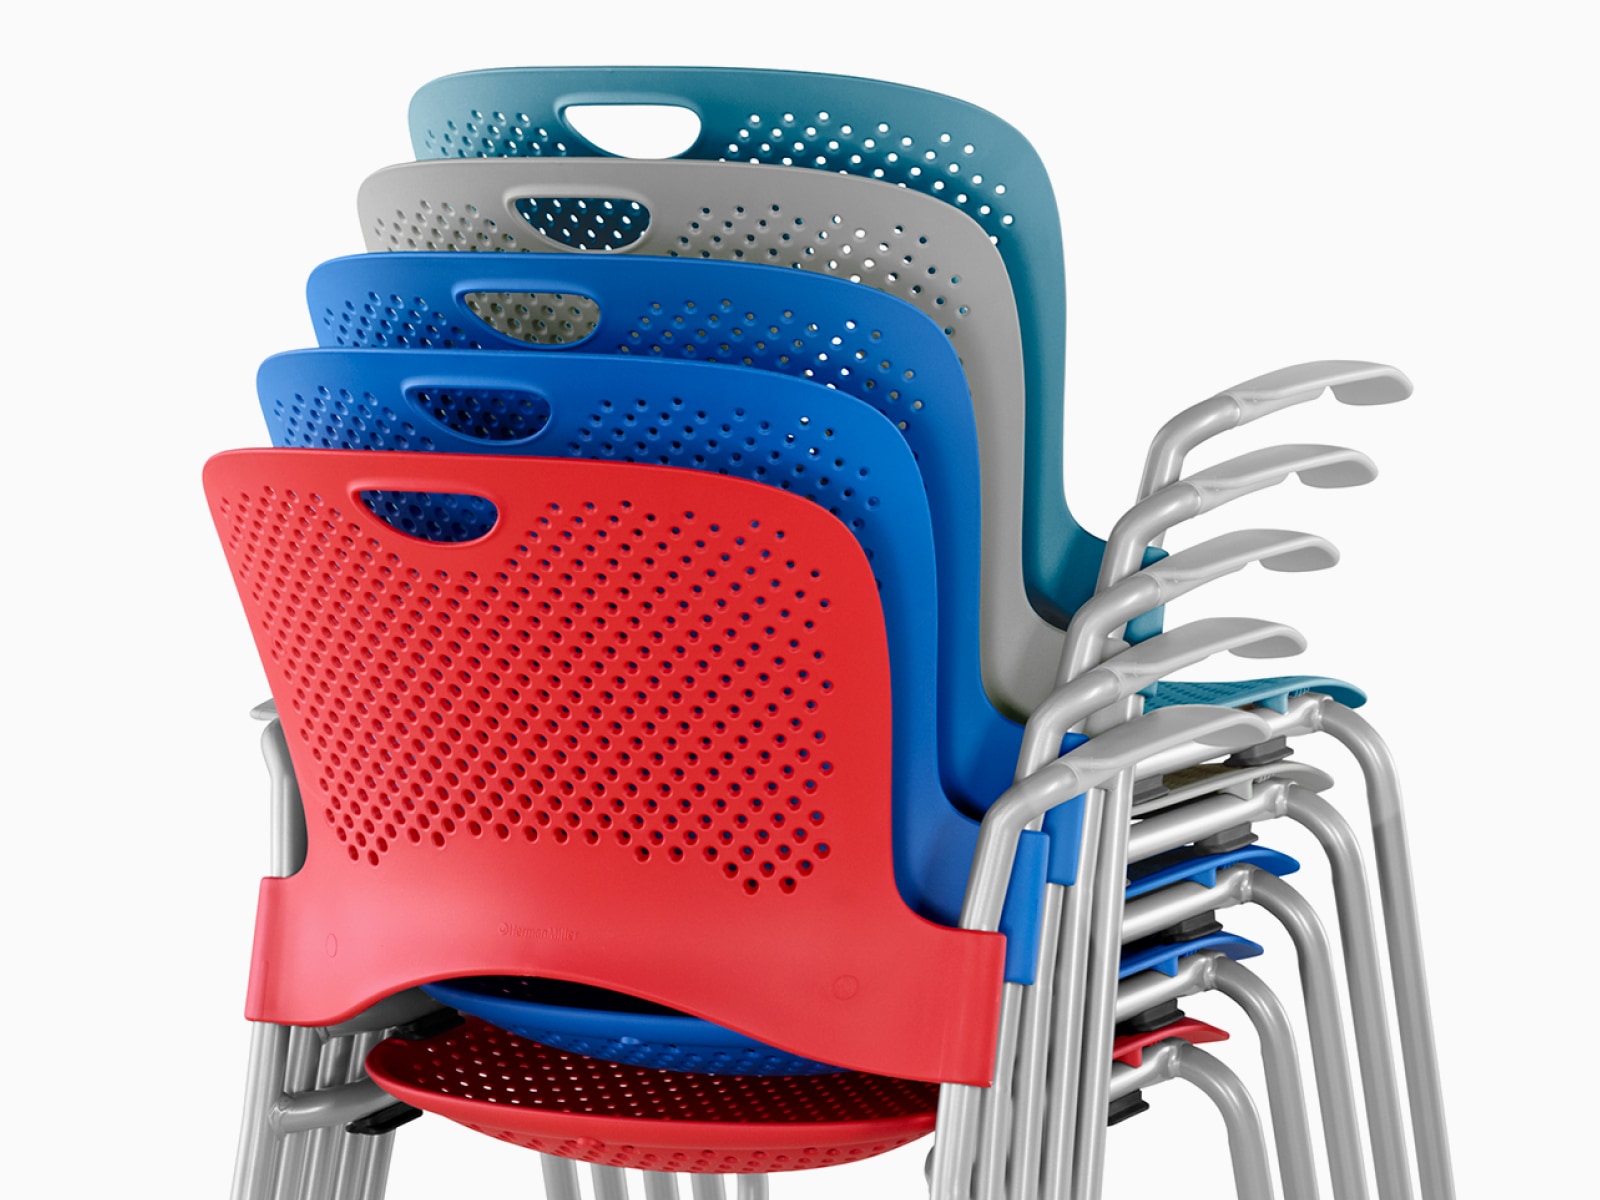 Achteraanzicht van Caper-stoelen in rood, blauw, grijs en turkoois, vijf hoog gestapeld.